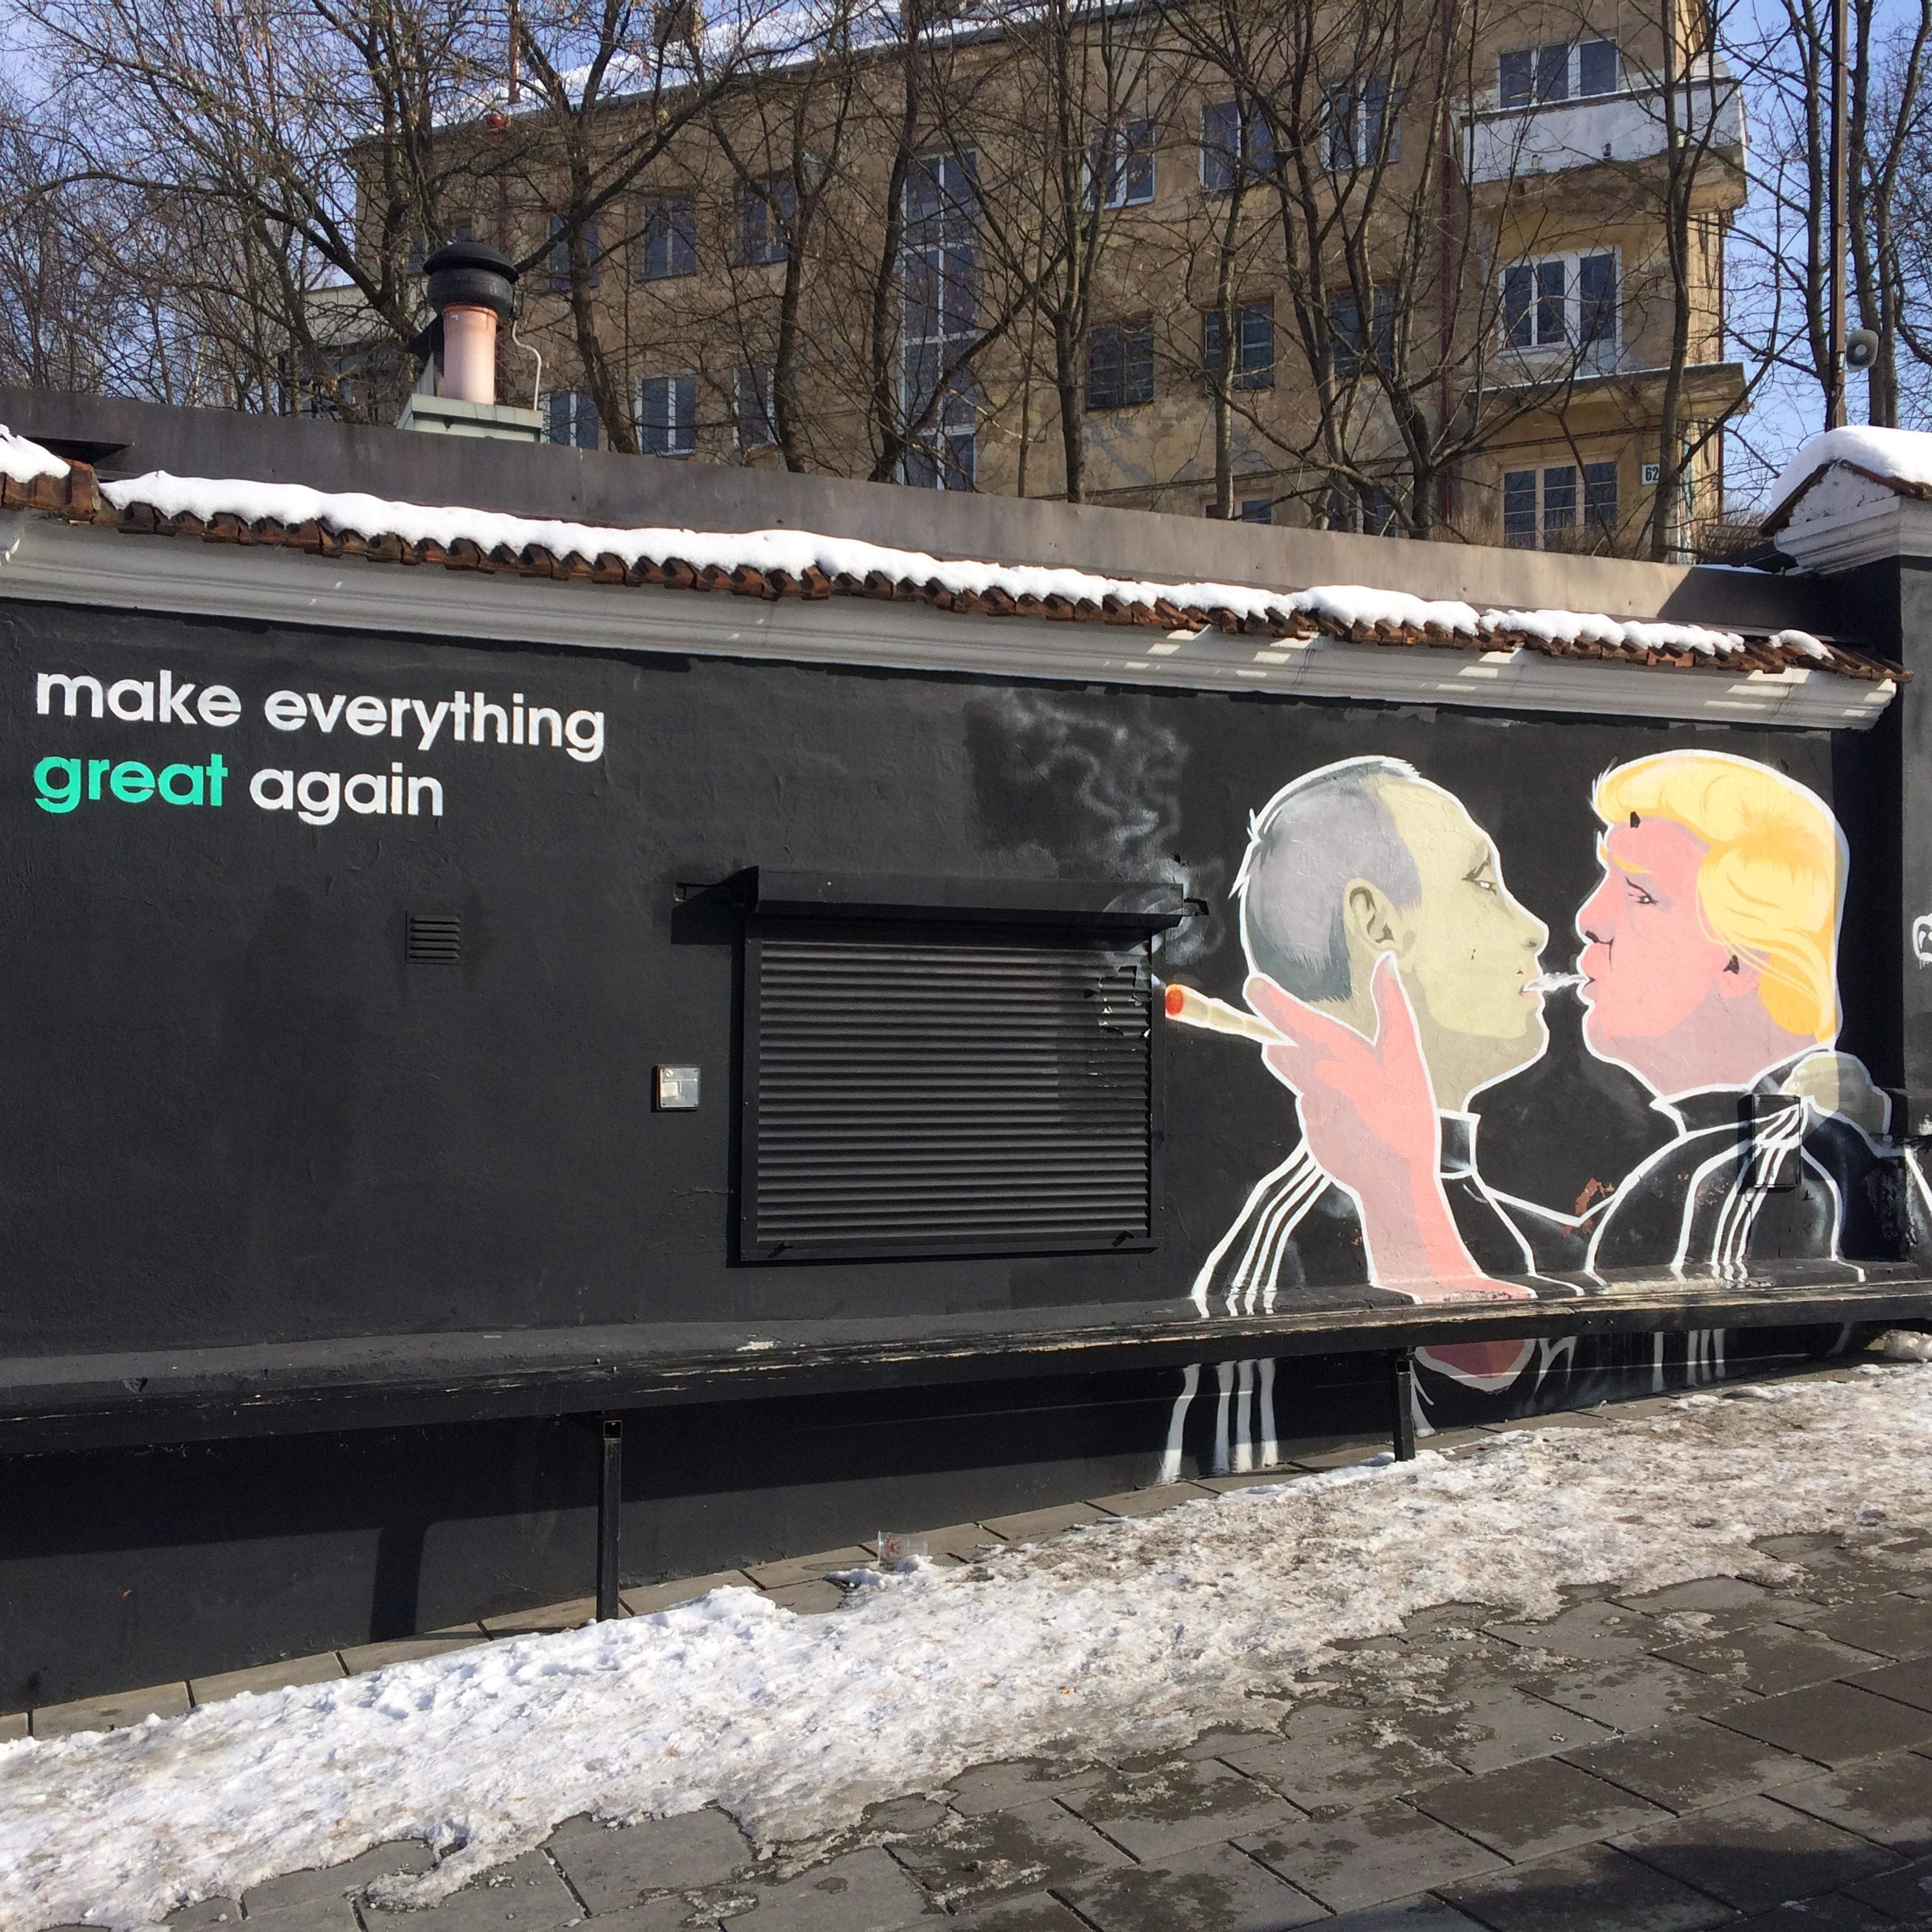 Mural z politykami, który palą razem z napisem "make everything great again"